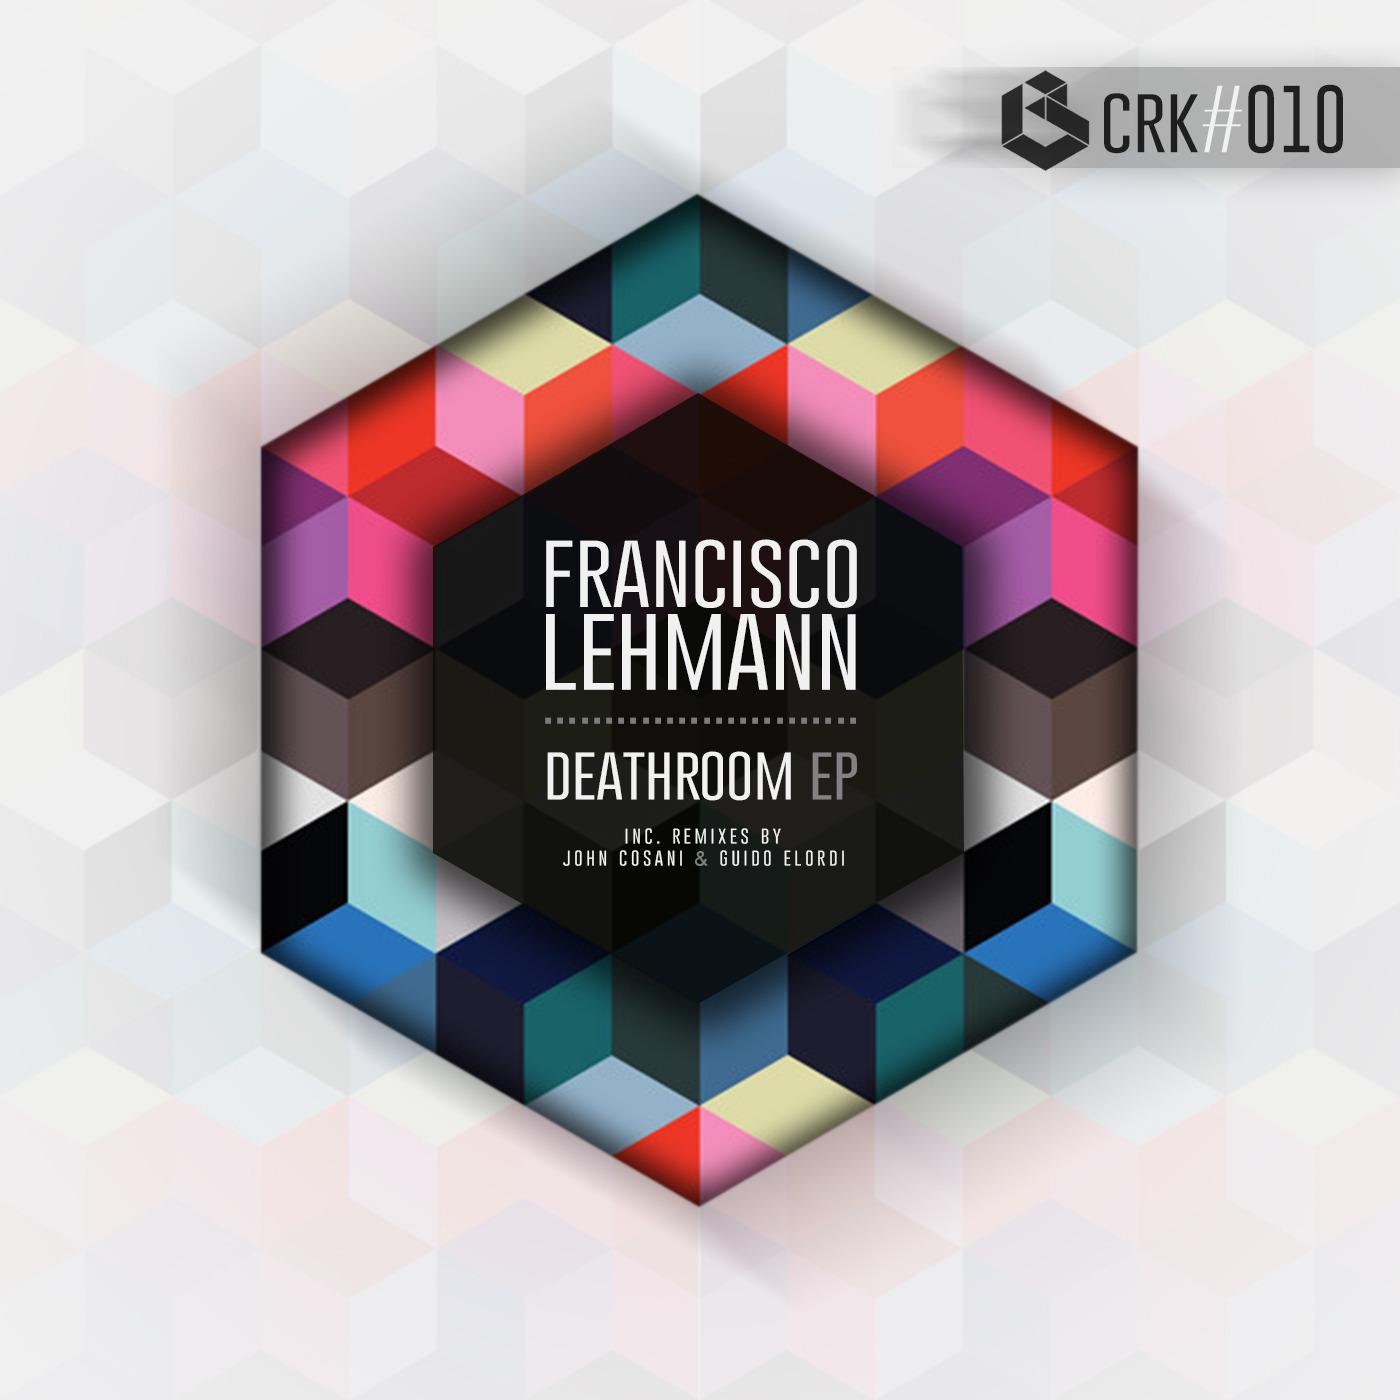 Franz Lehmann - Deathroom (Guido Elordi)